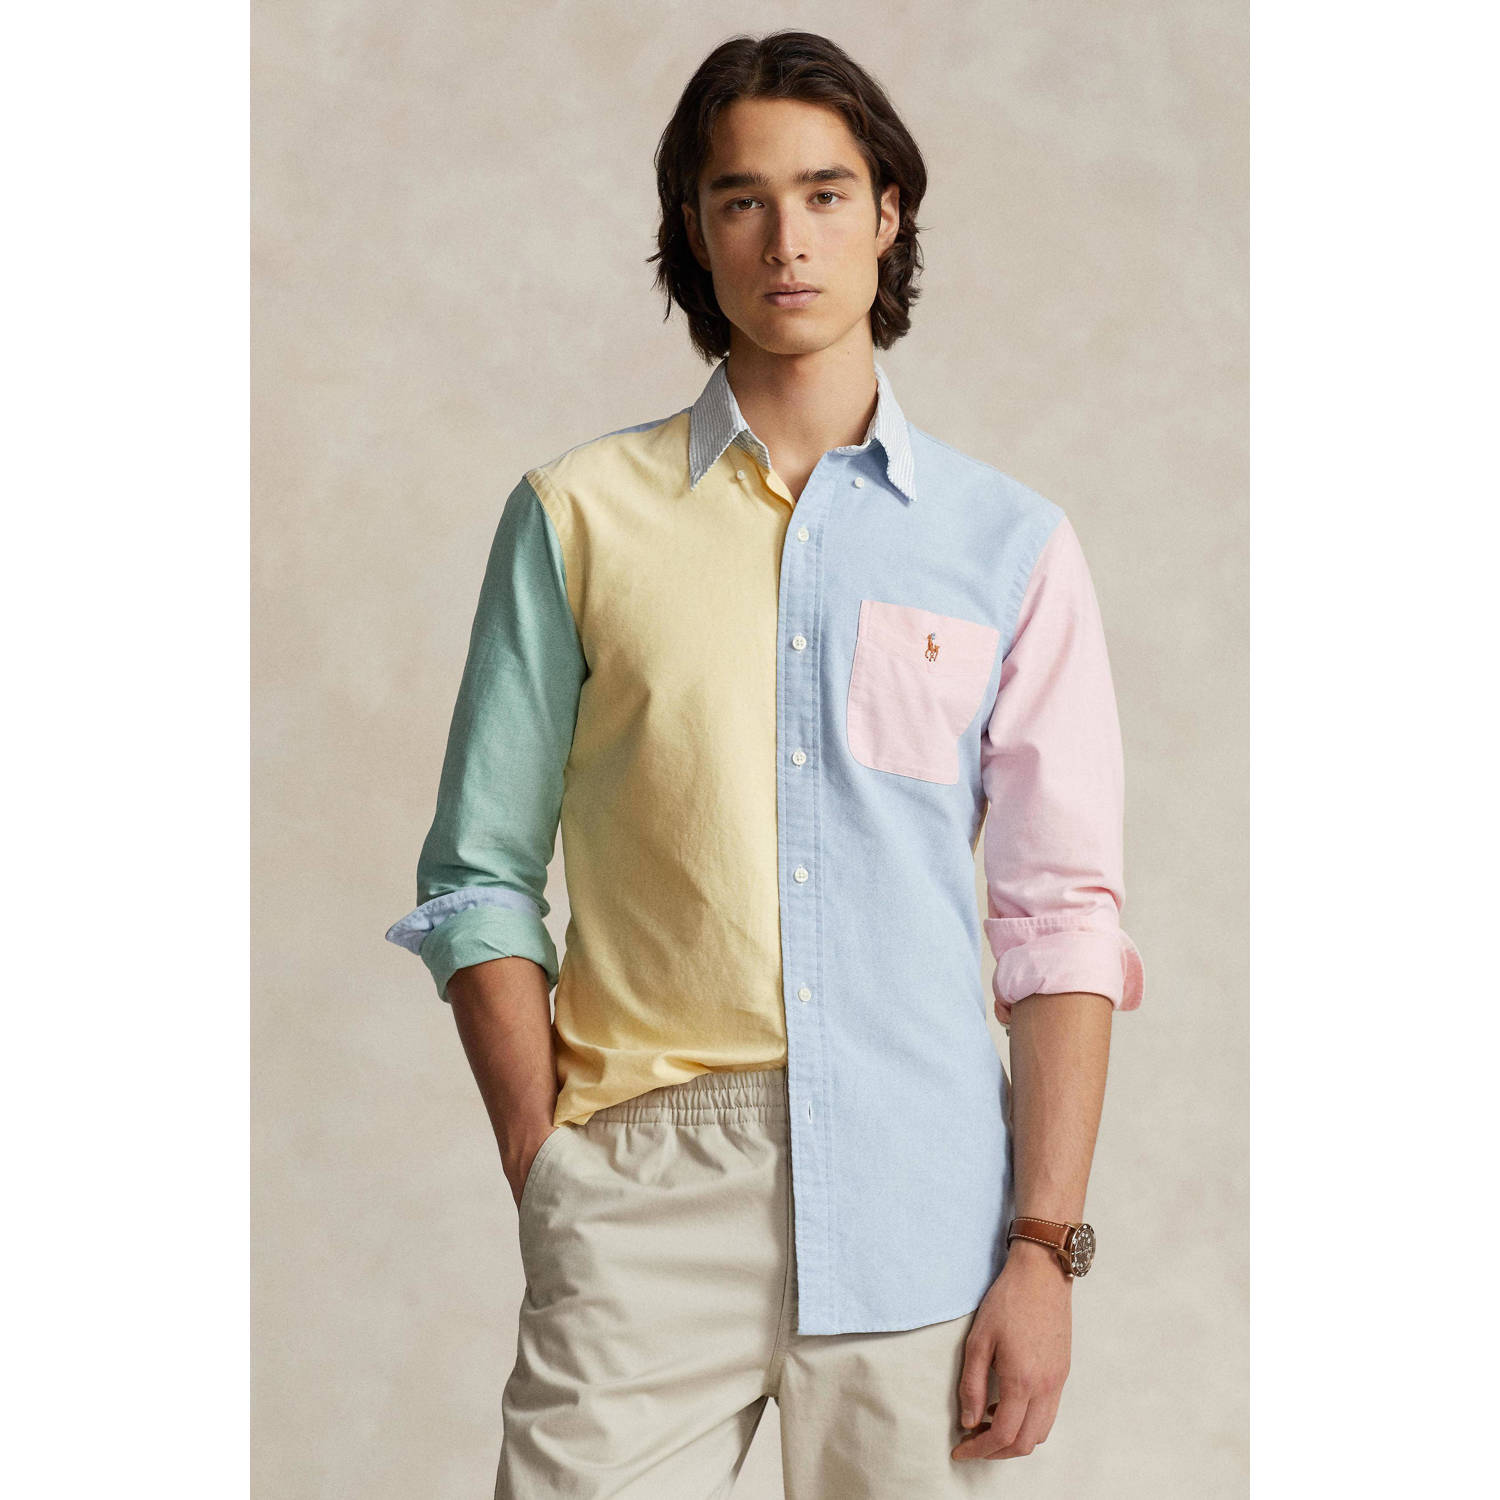 POLO Ralph Lauren slim fit overhemd blauw geel roze mint